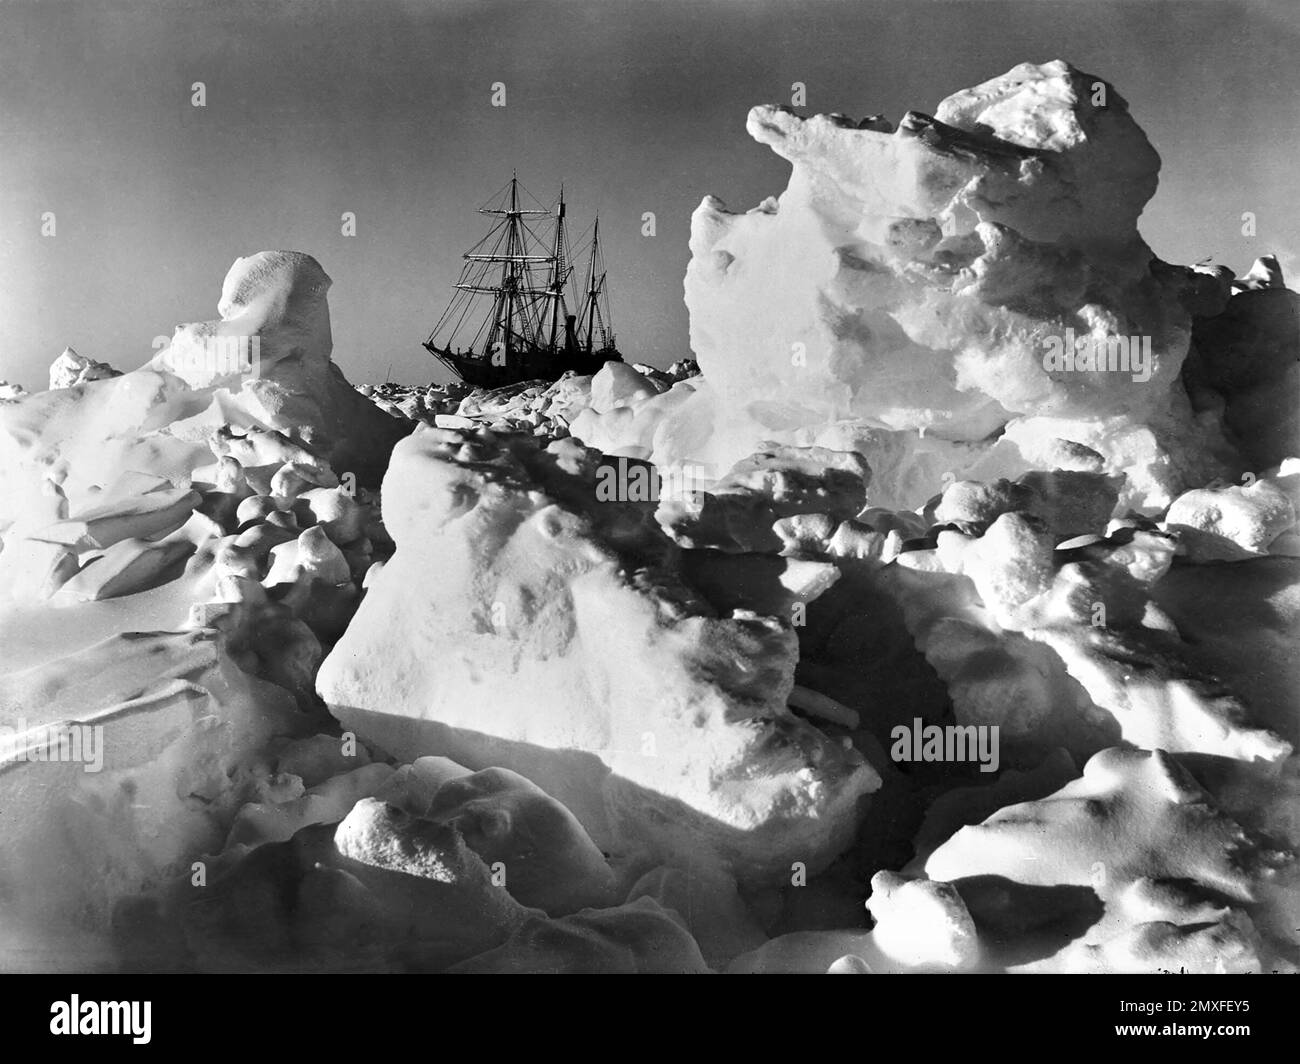 Ernest Shackleton, endurance. Le navire de Sir Ernest Shackleton, Endurance, est piégé dans la glace pendant l'expédition transantarctique impériale de 1914/15. Photo de Frank Hurley, 1915 Banque D'Images